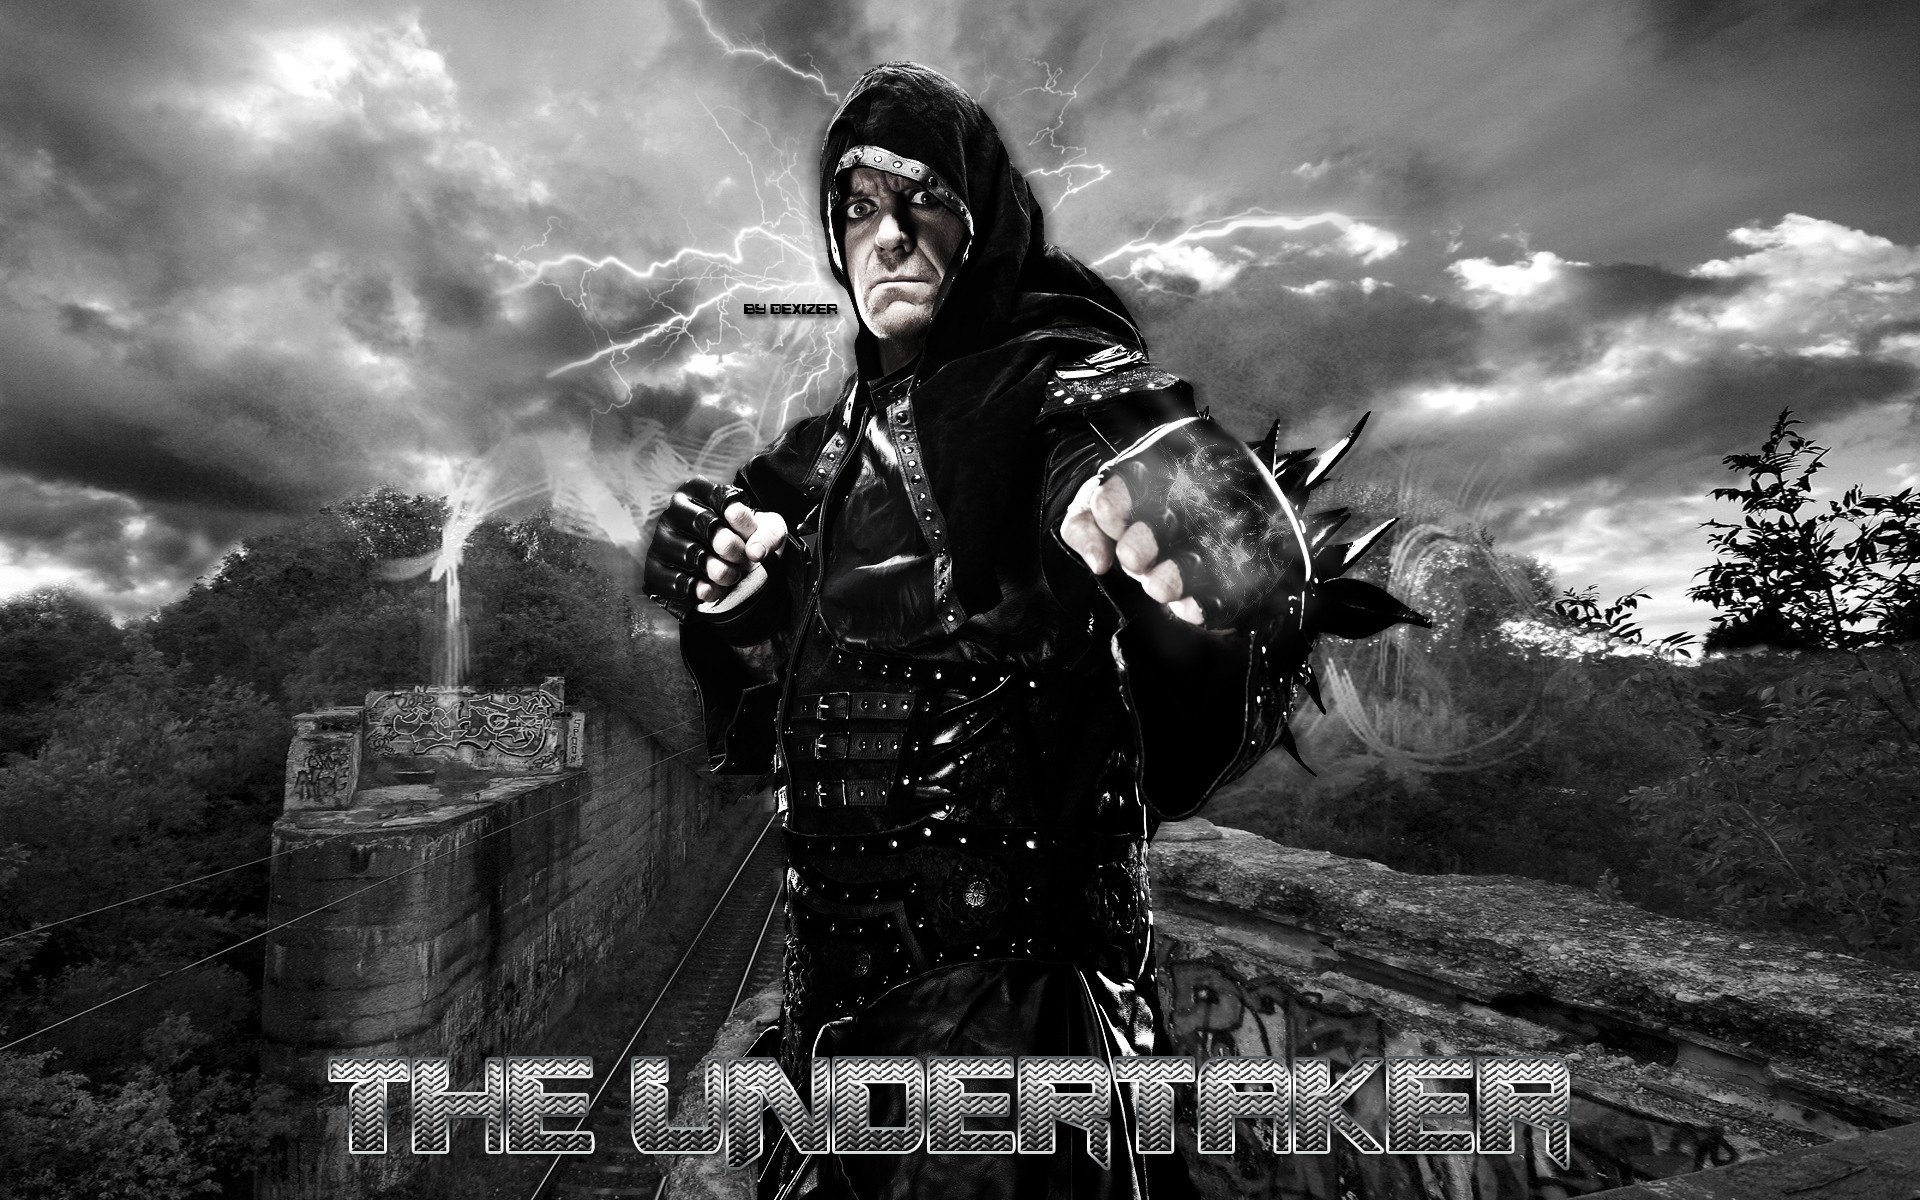 Wwe Superstar The Undertaker Wallpaper